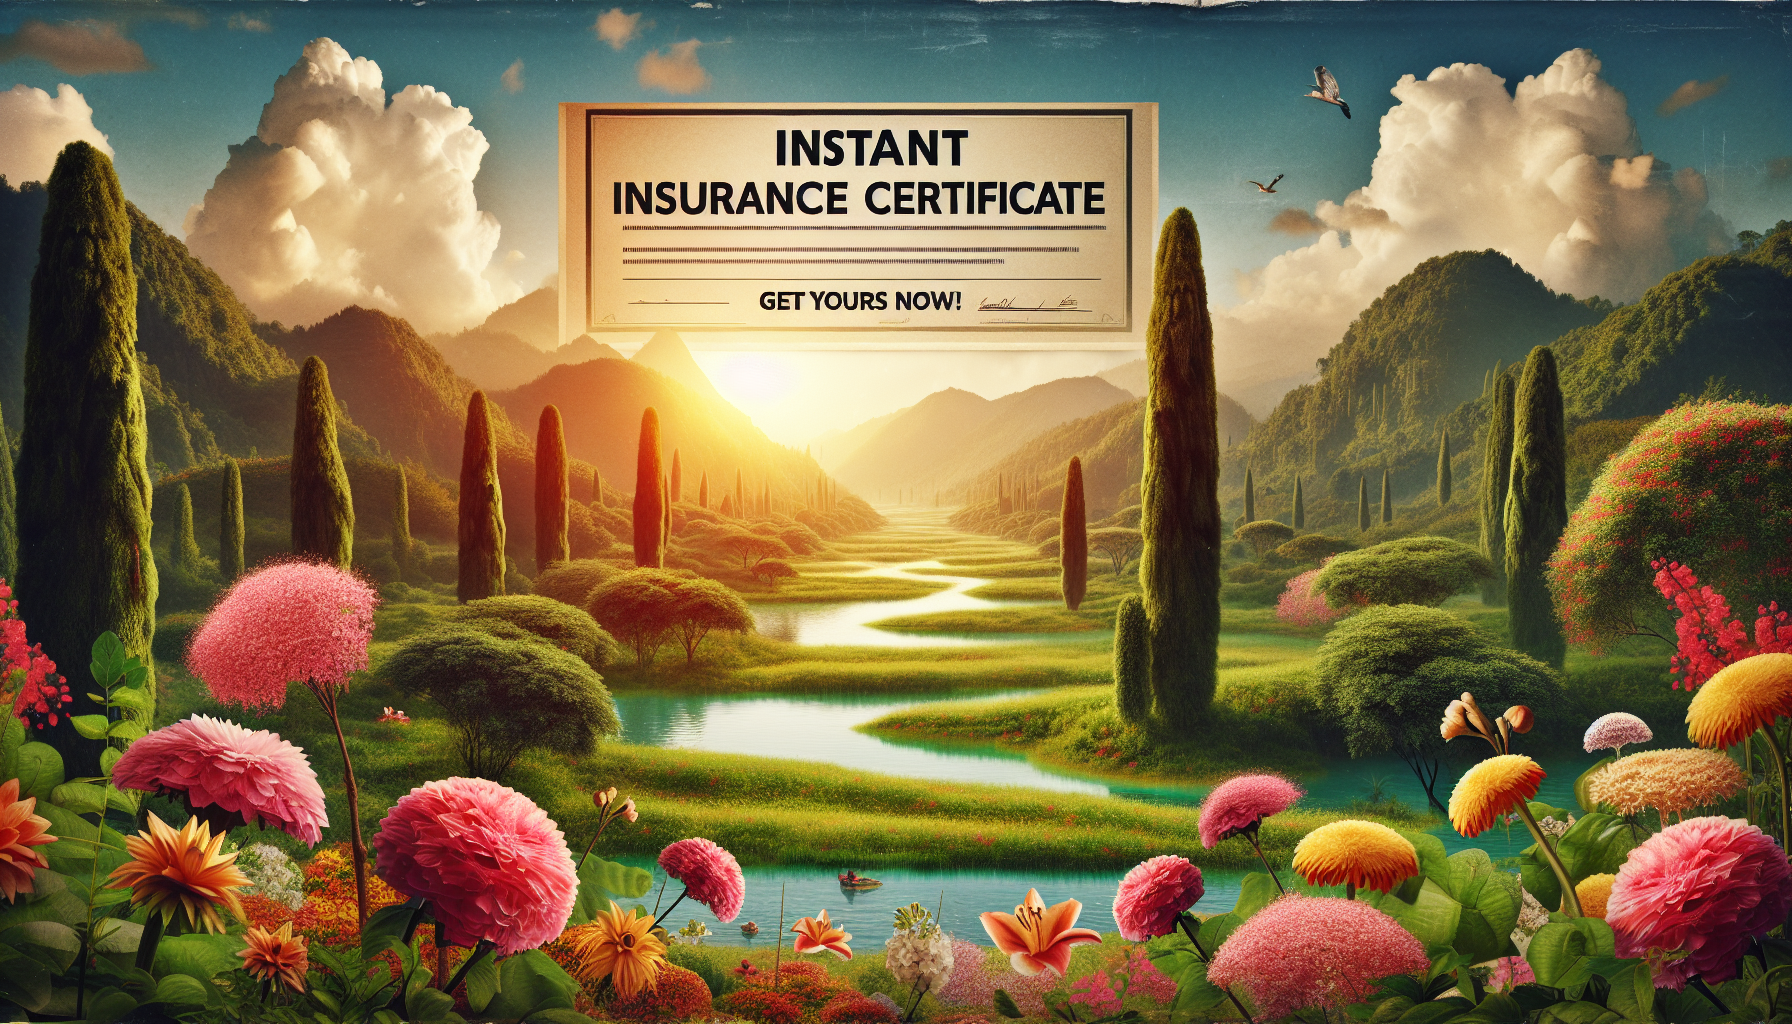 obtenez rapidement un certificat d'assurance avec notre service en ligne. obtenez une protection d'assurance immédiate pour vos besoins.